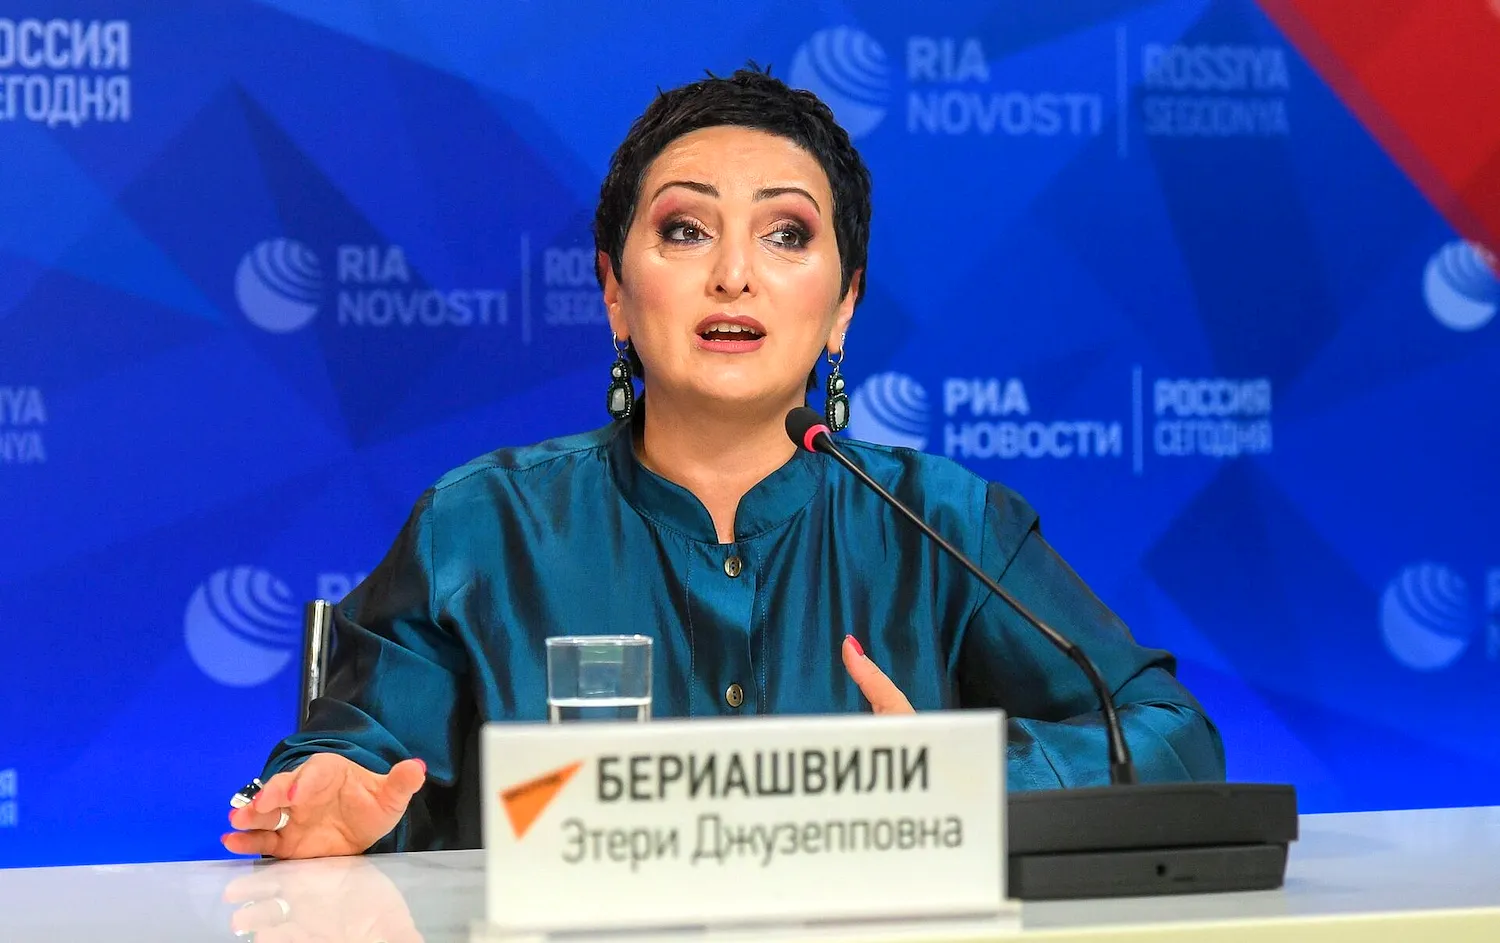 Лейла Бериашвили